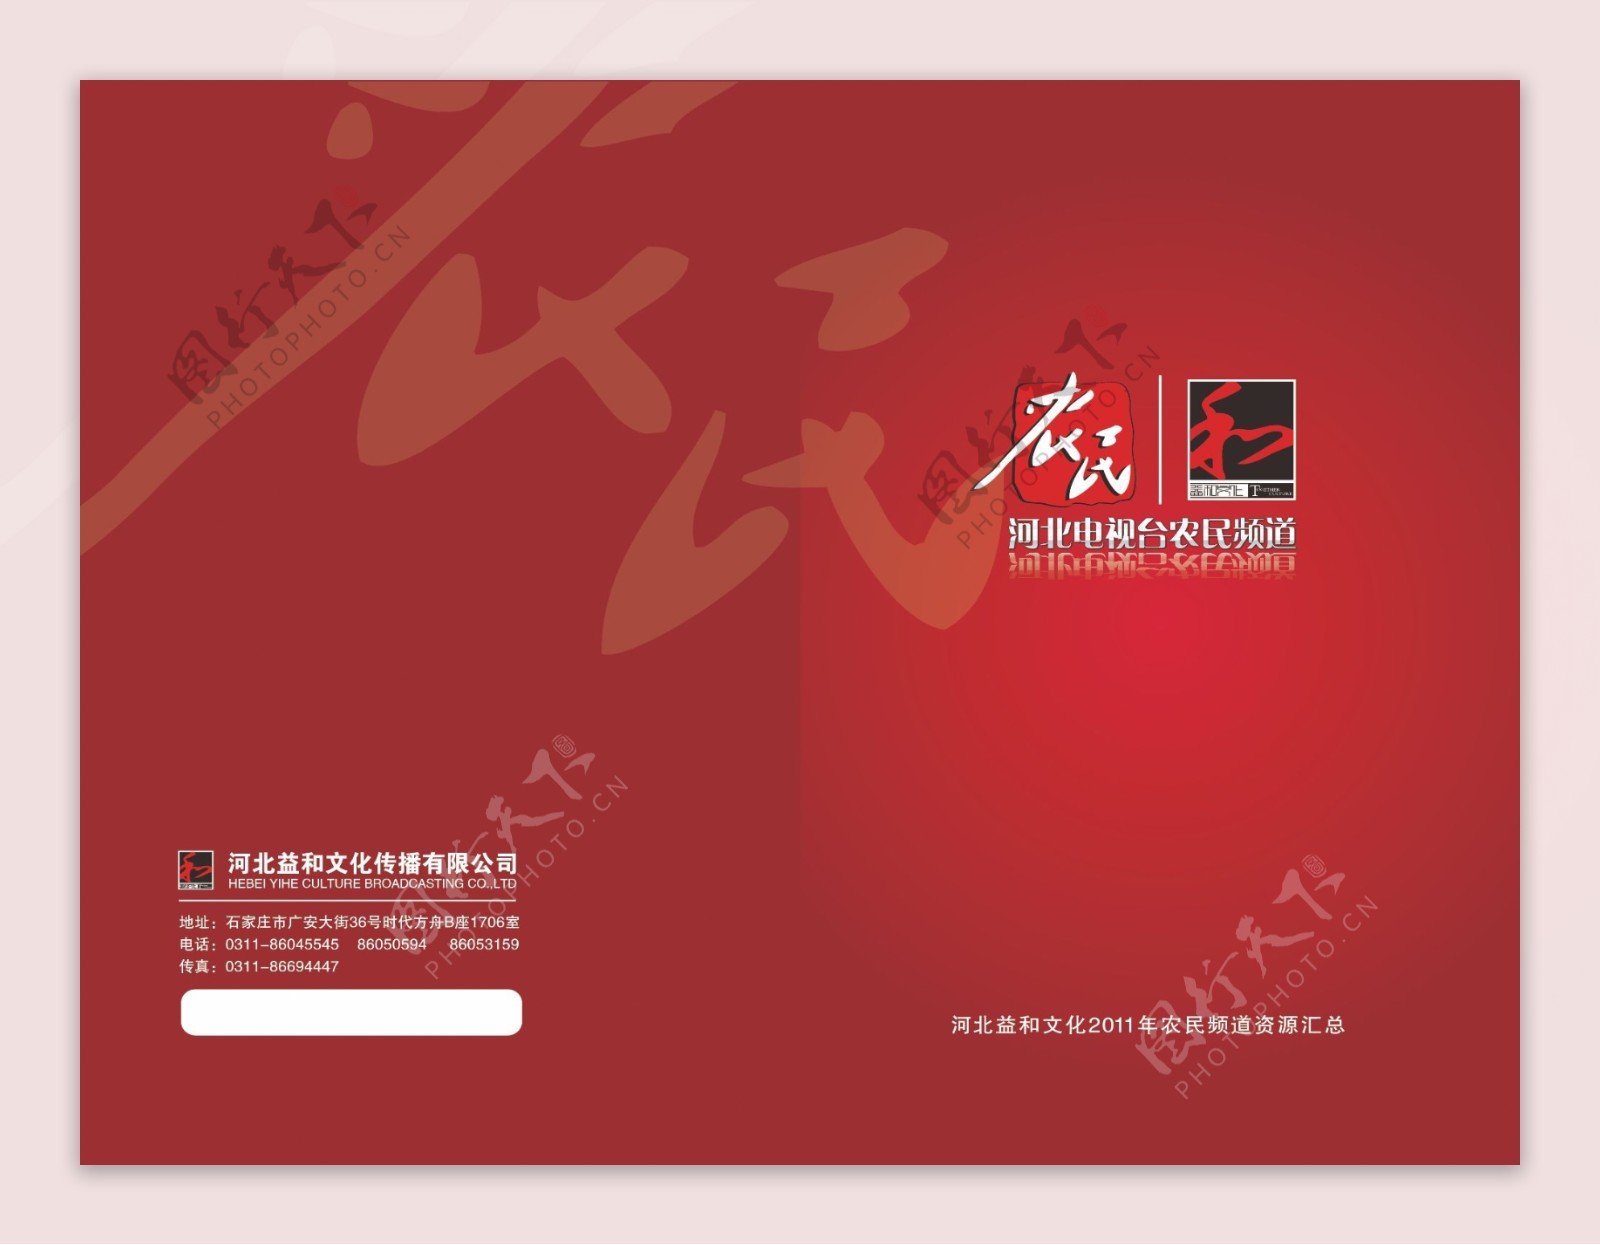 河北电视台农民频道宣传册设计图片